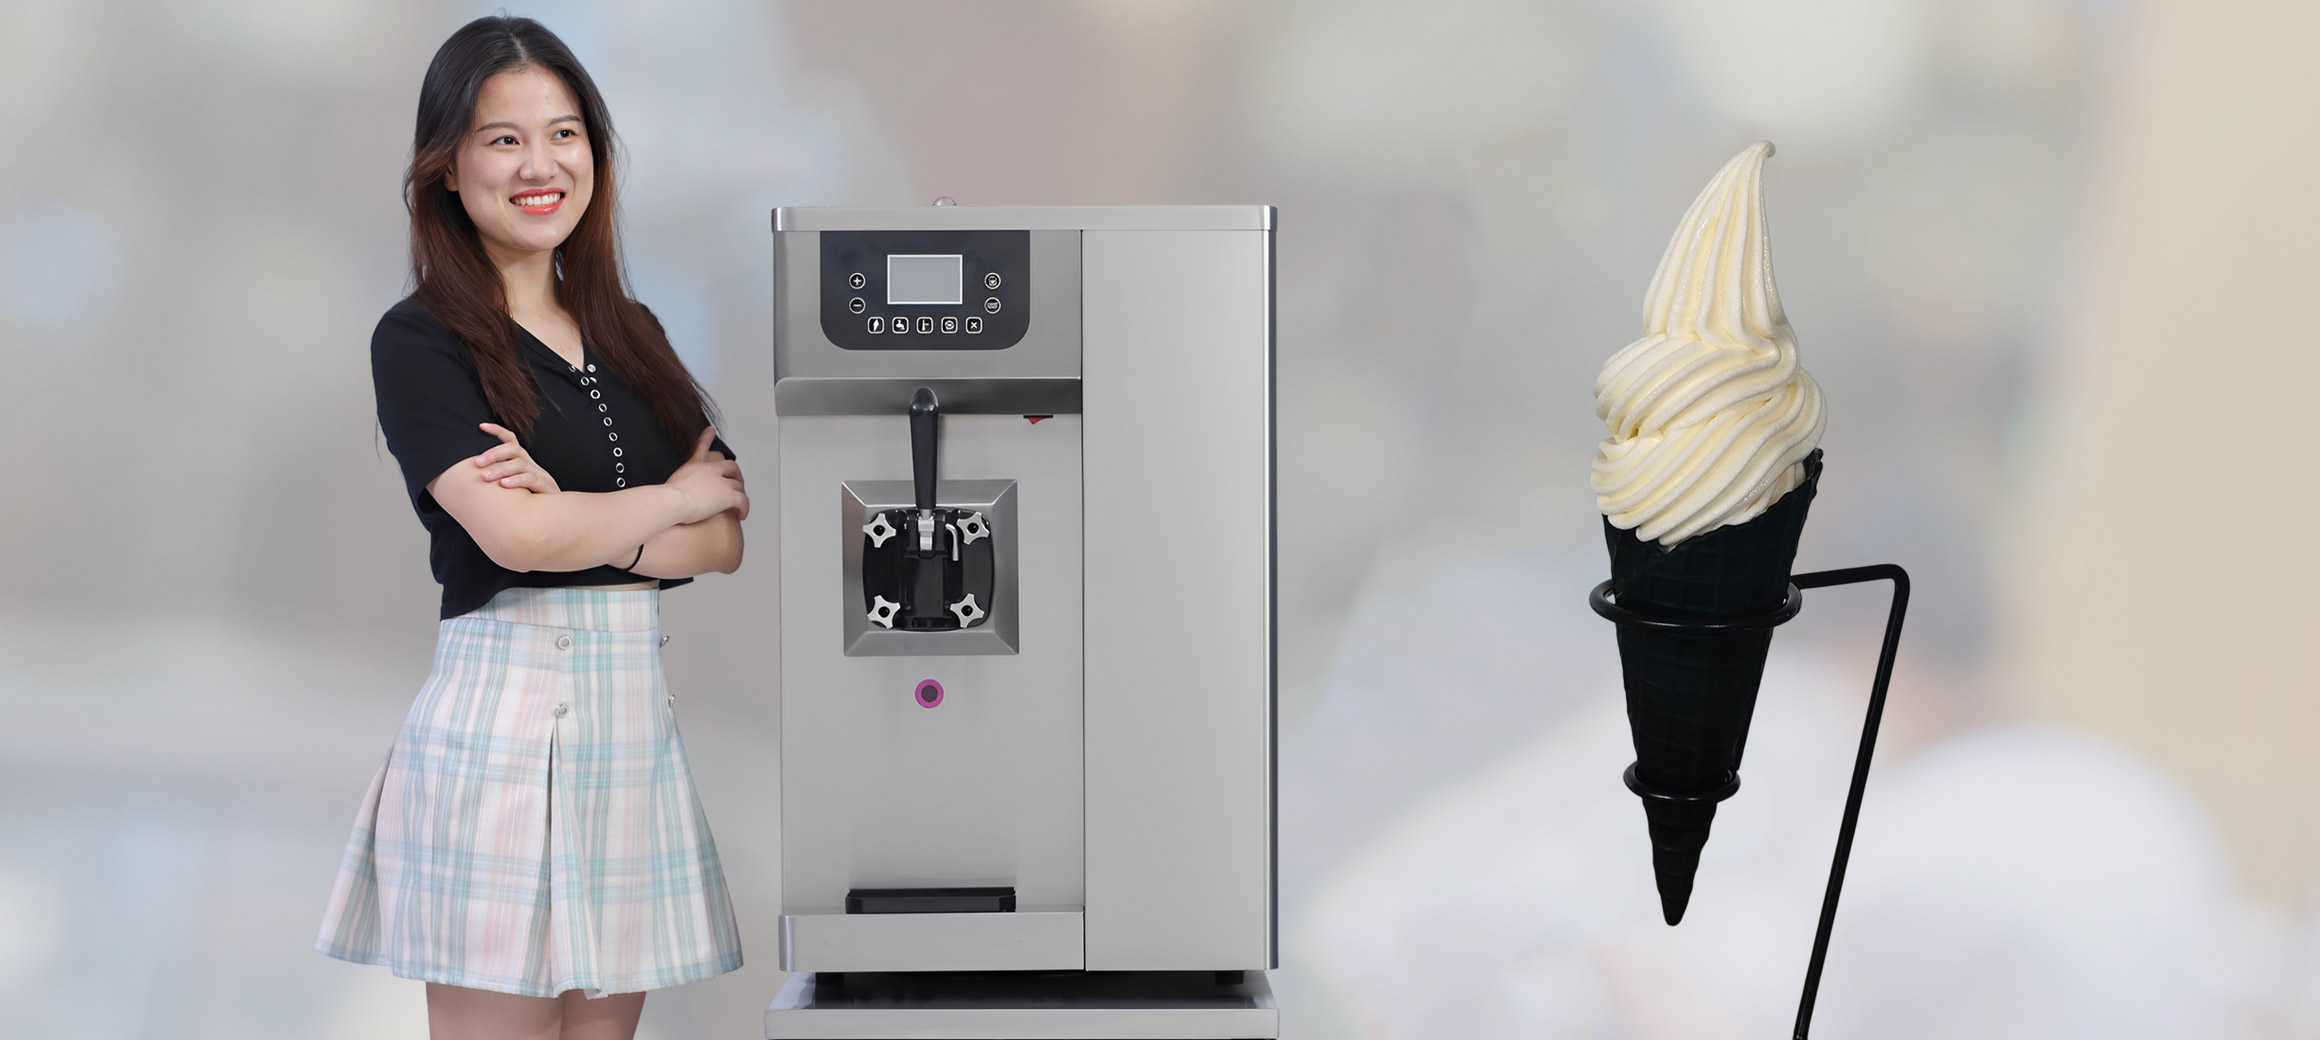 Cone Ice Cream Machines Soft Serve Ice Cream Machine From China - China Soft  Serve Ice Cream Machine, Ice Cream Machine From China